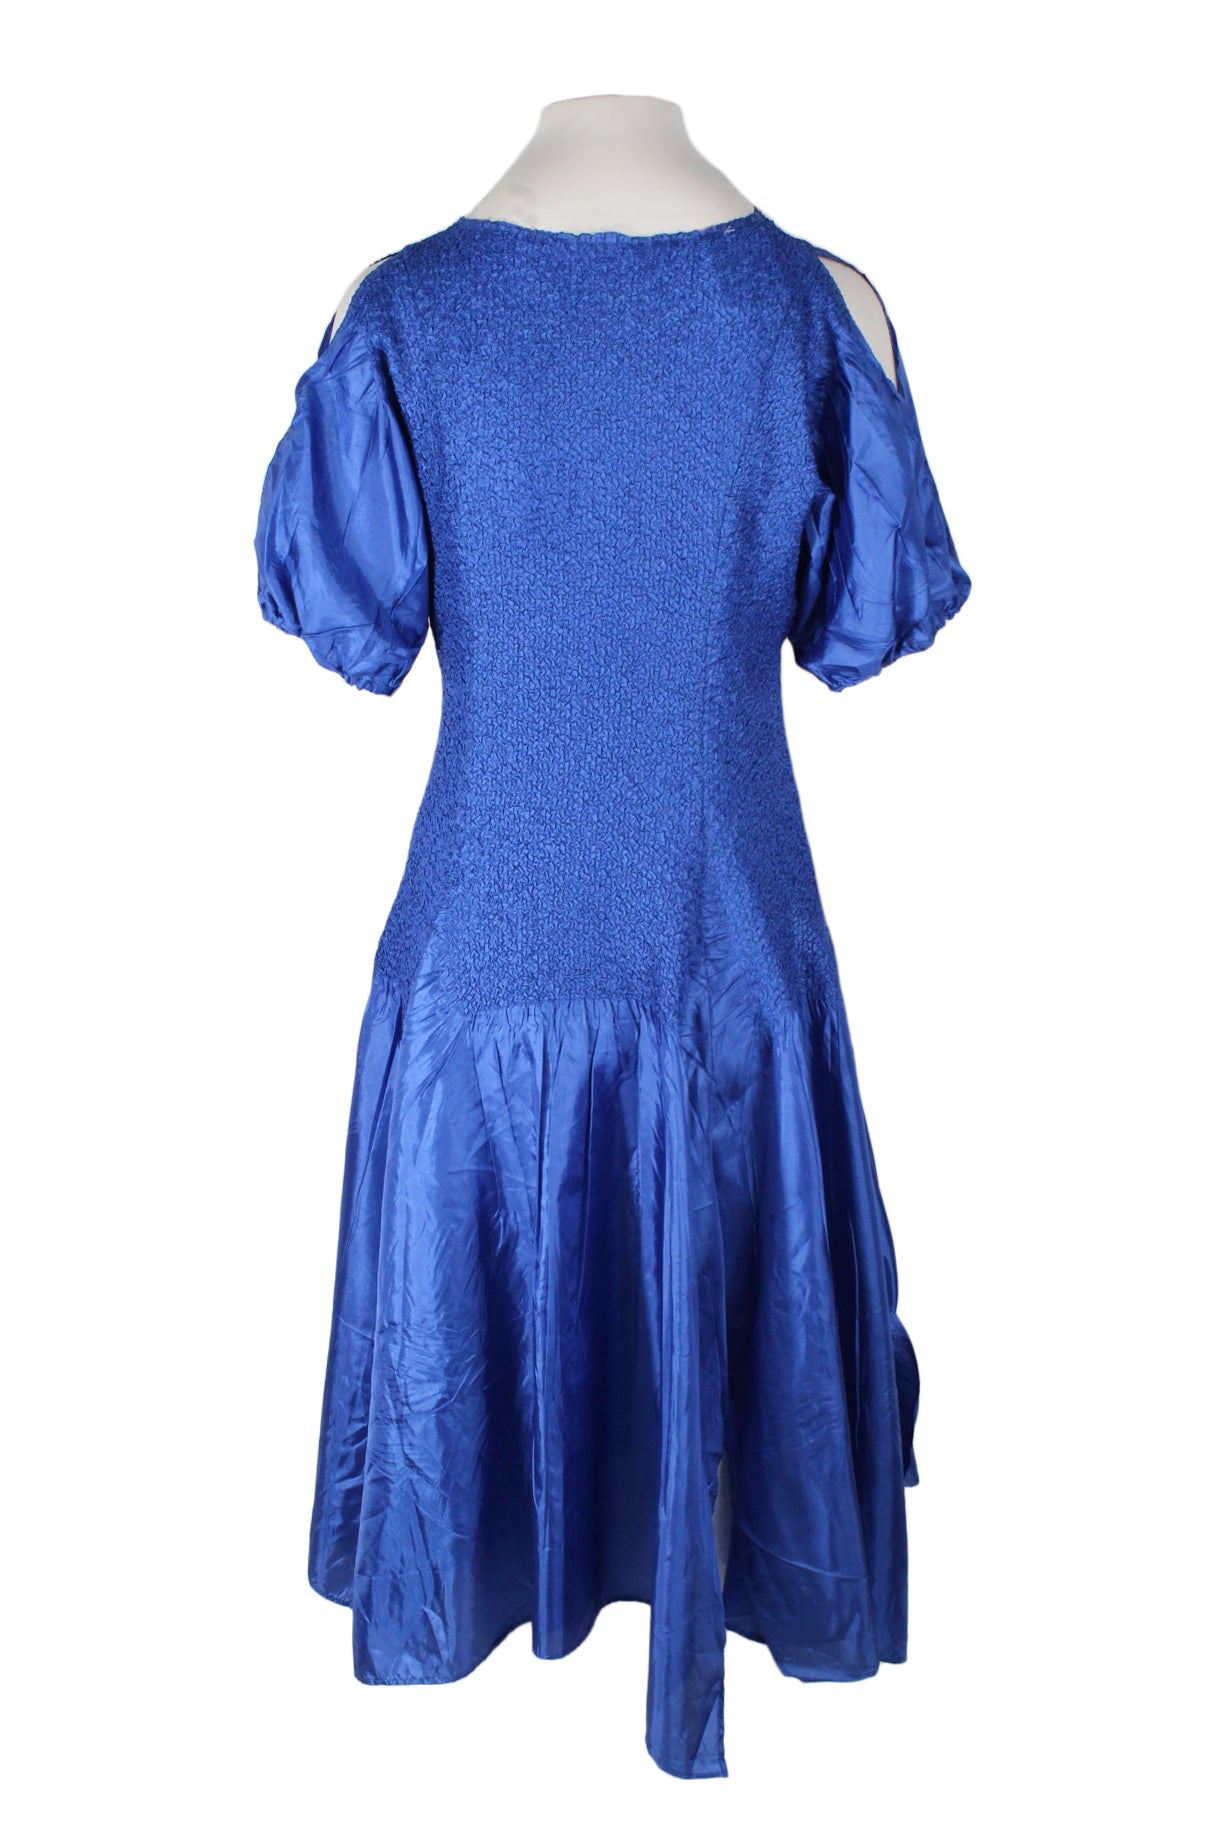 back view of vintage royal blue short sleeve dress